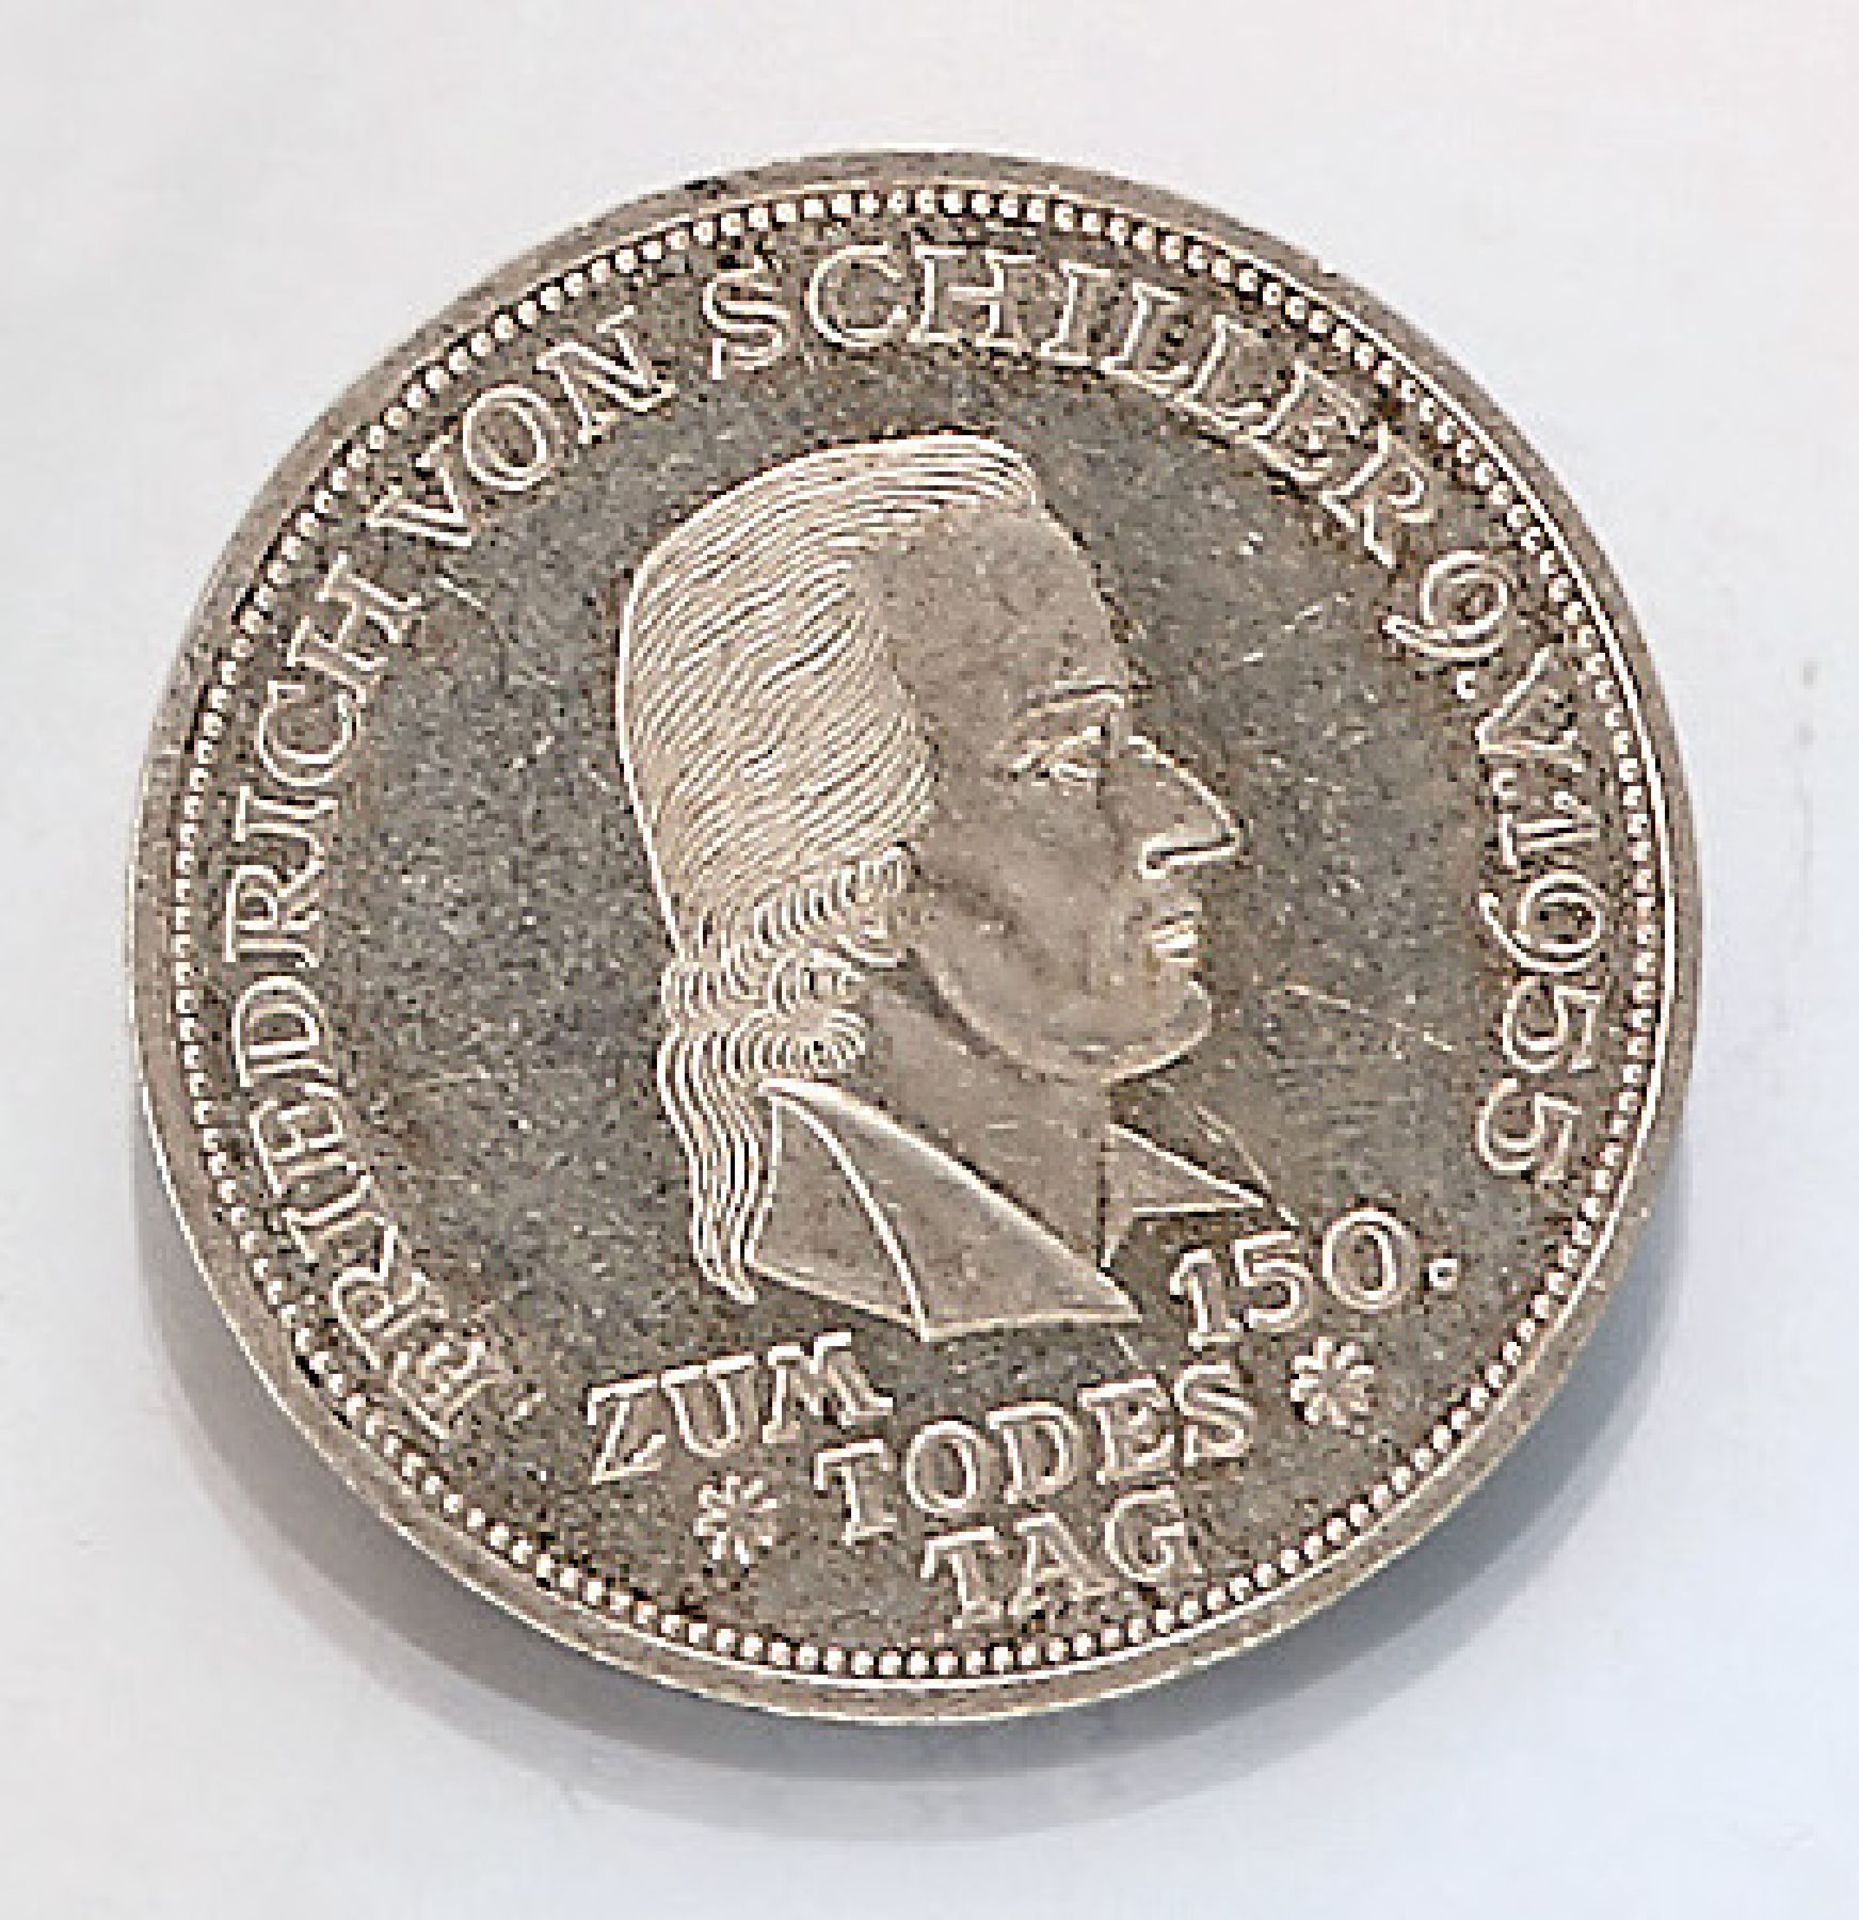 Silbermünze 5 Mark 1955, zum 150. Todestag von Friedrich von Schiller, Prägemarke F